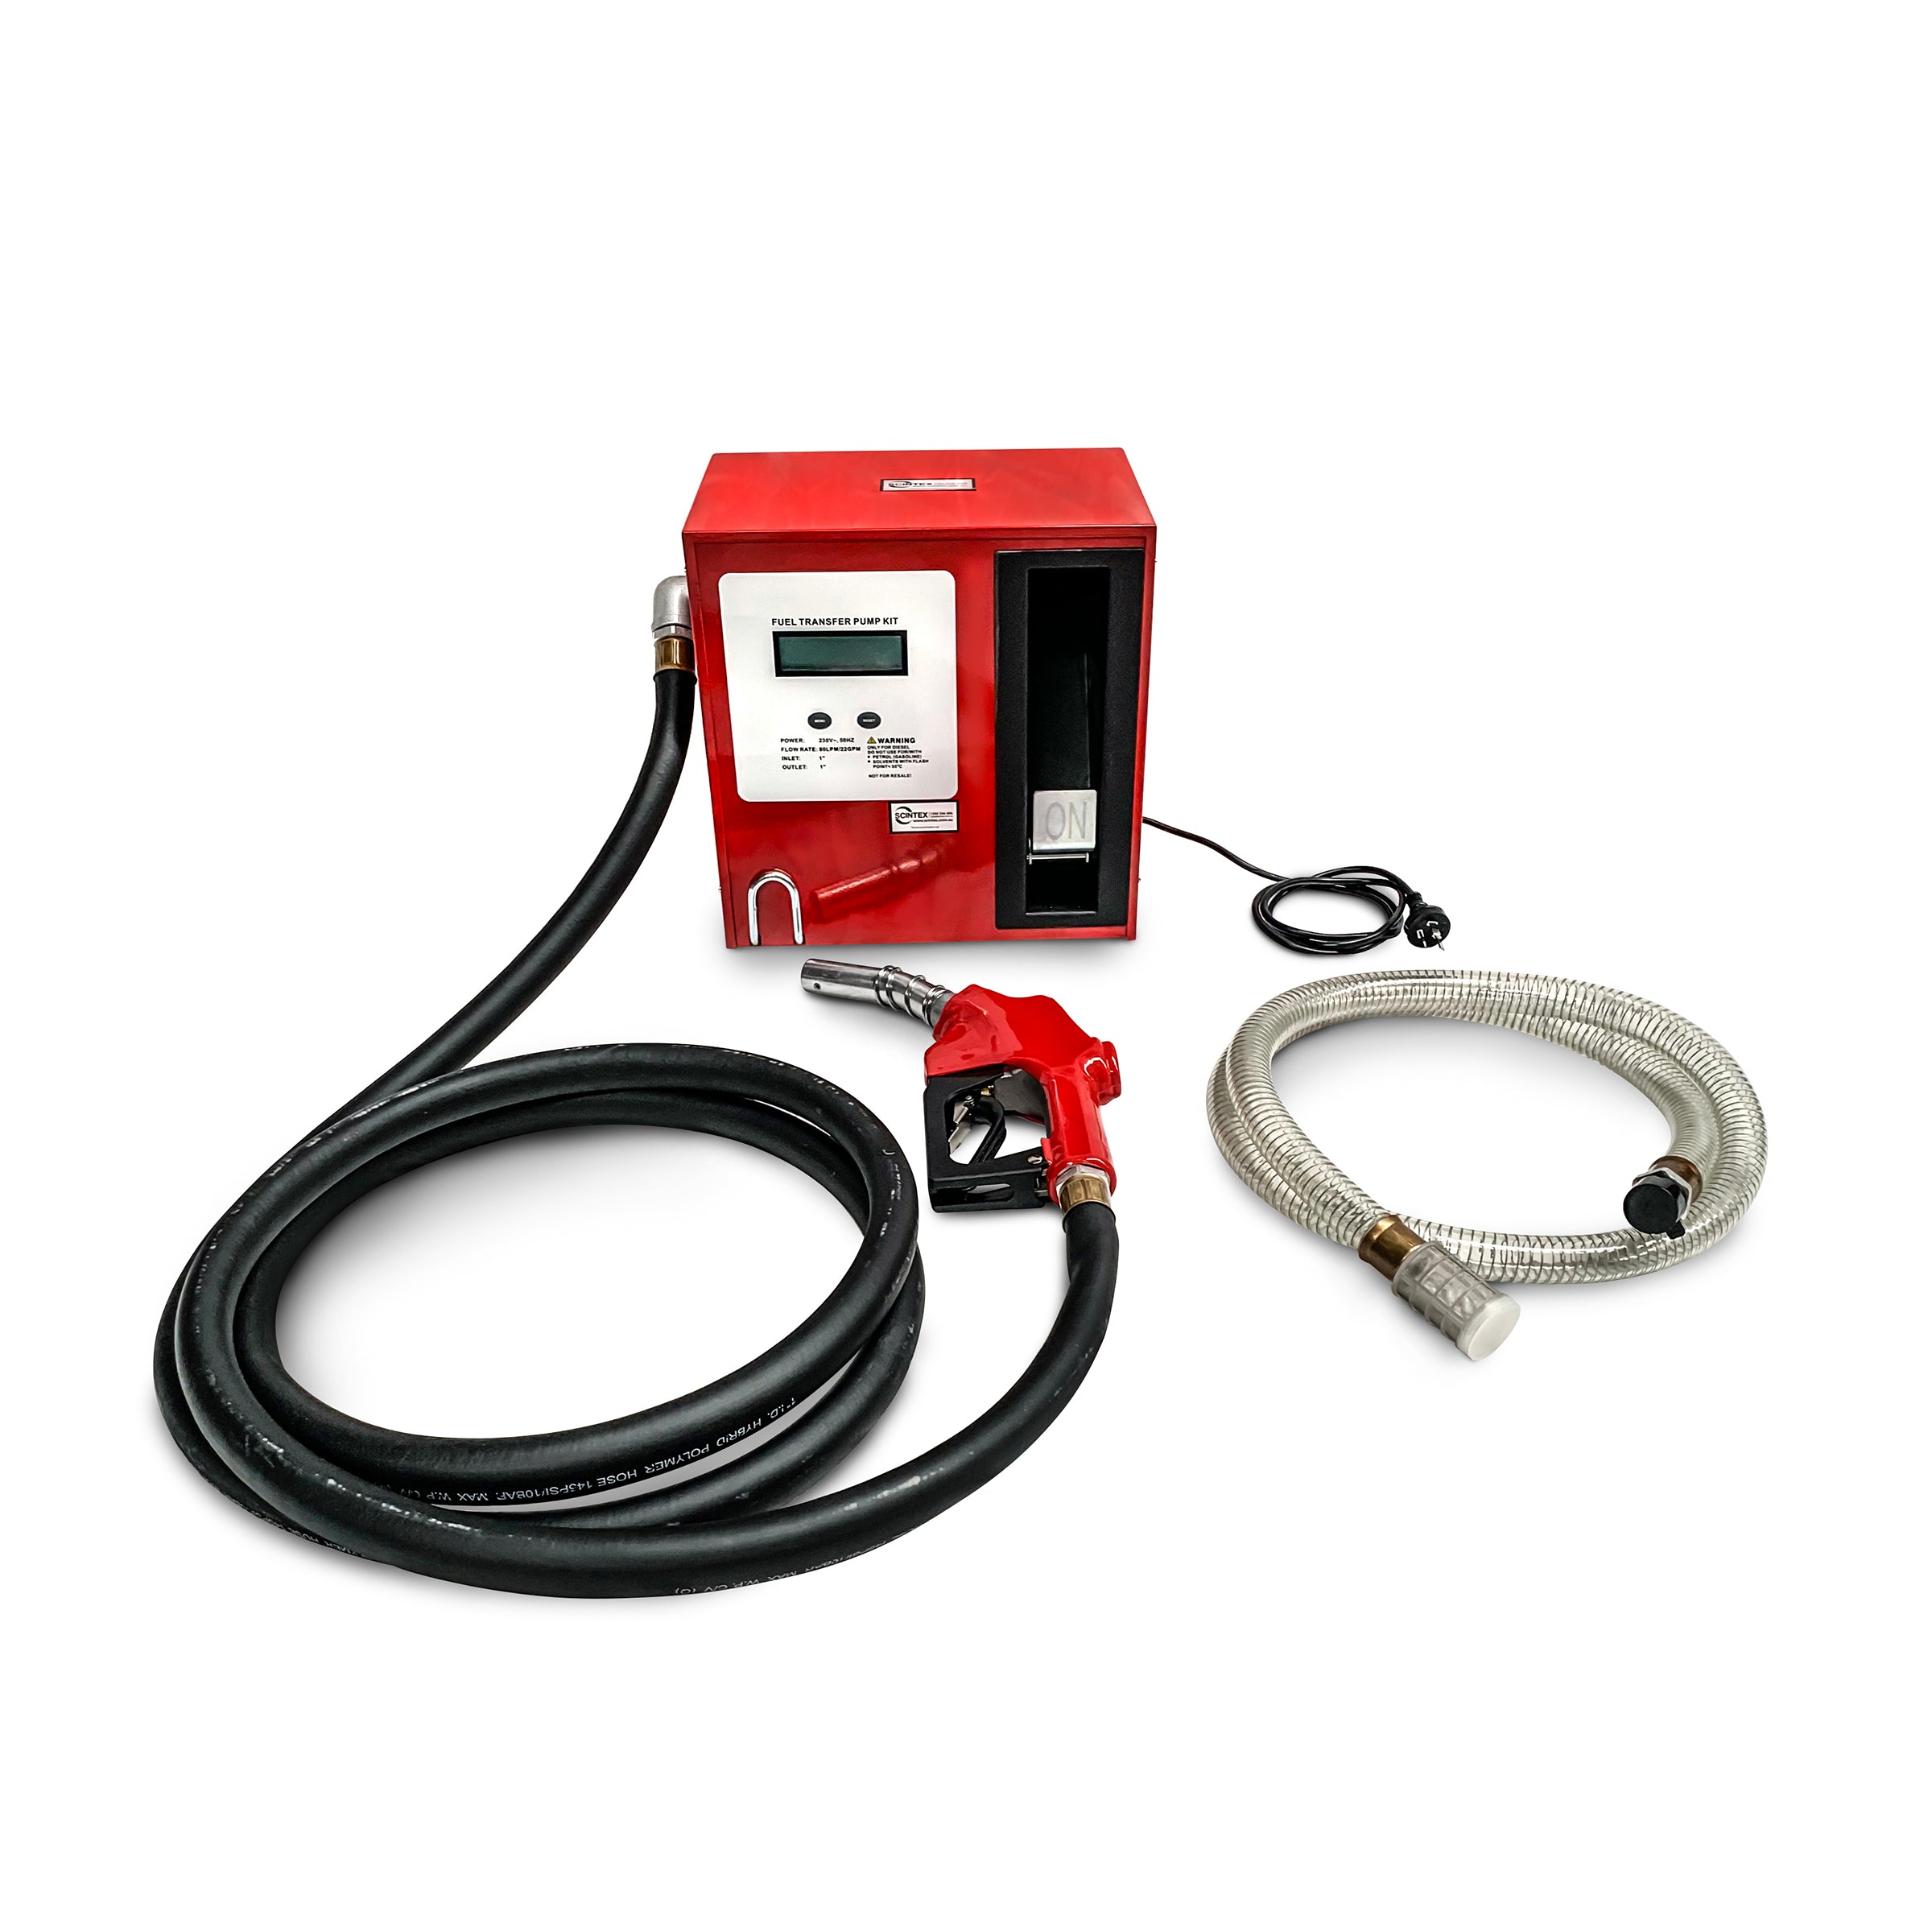 diesel pump bowser digital flow meter kit